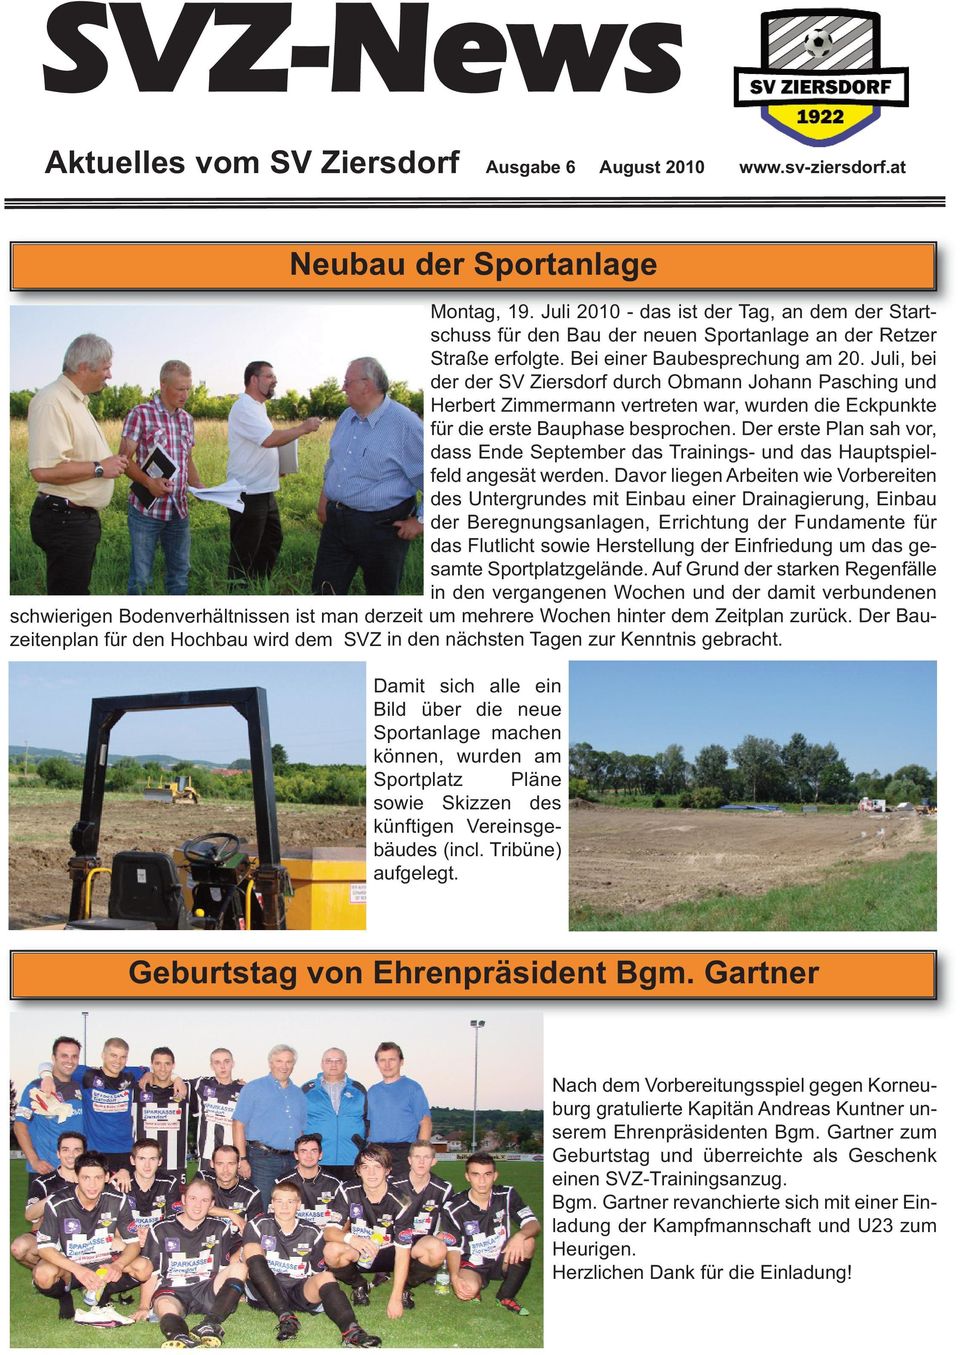 Juli, bei der der SV Ziersdorf durch Obmann Johann Pasching und Herbert Zimmermann vertreten war, wurden die Eckpunkte für die erste Bauphase besprochen.